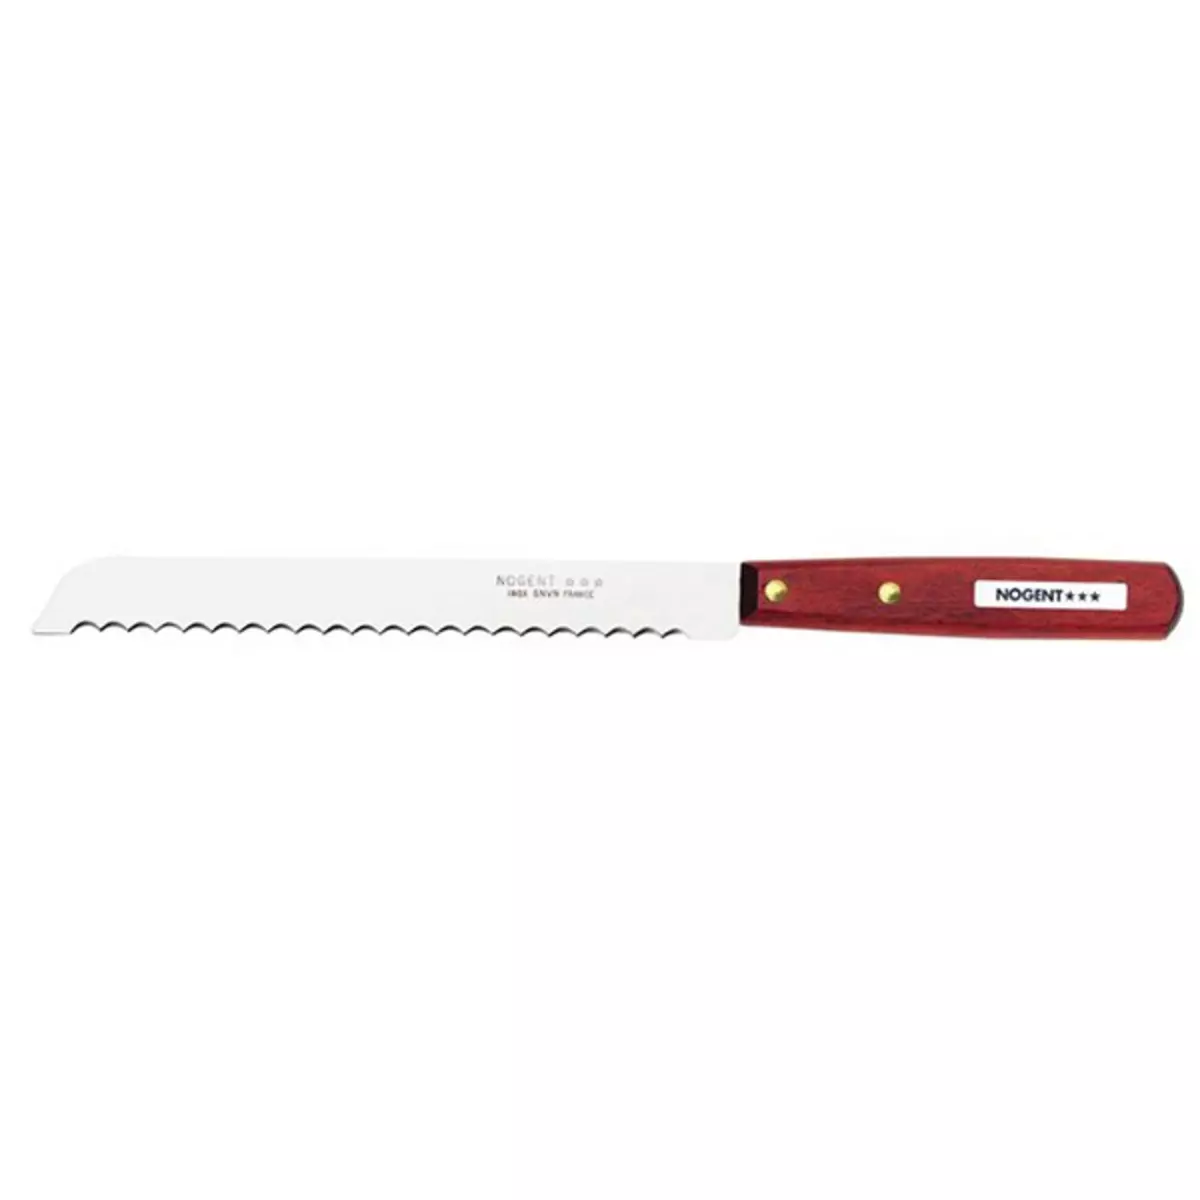 Nogent 3 etoiles Couteau à pain lame inox 19cm - 02080a